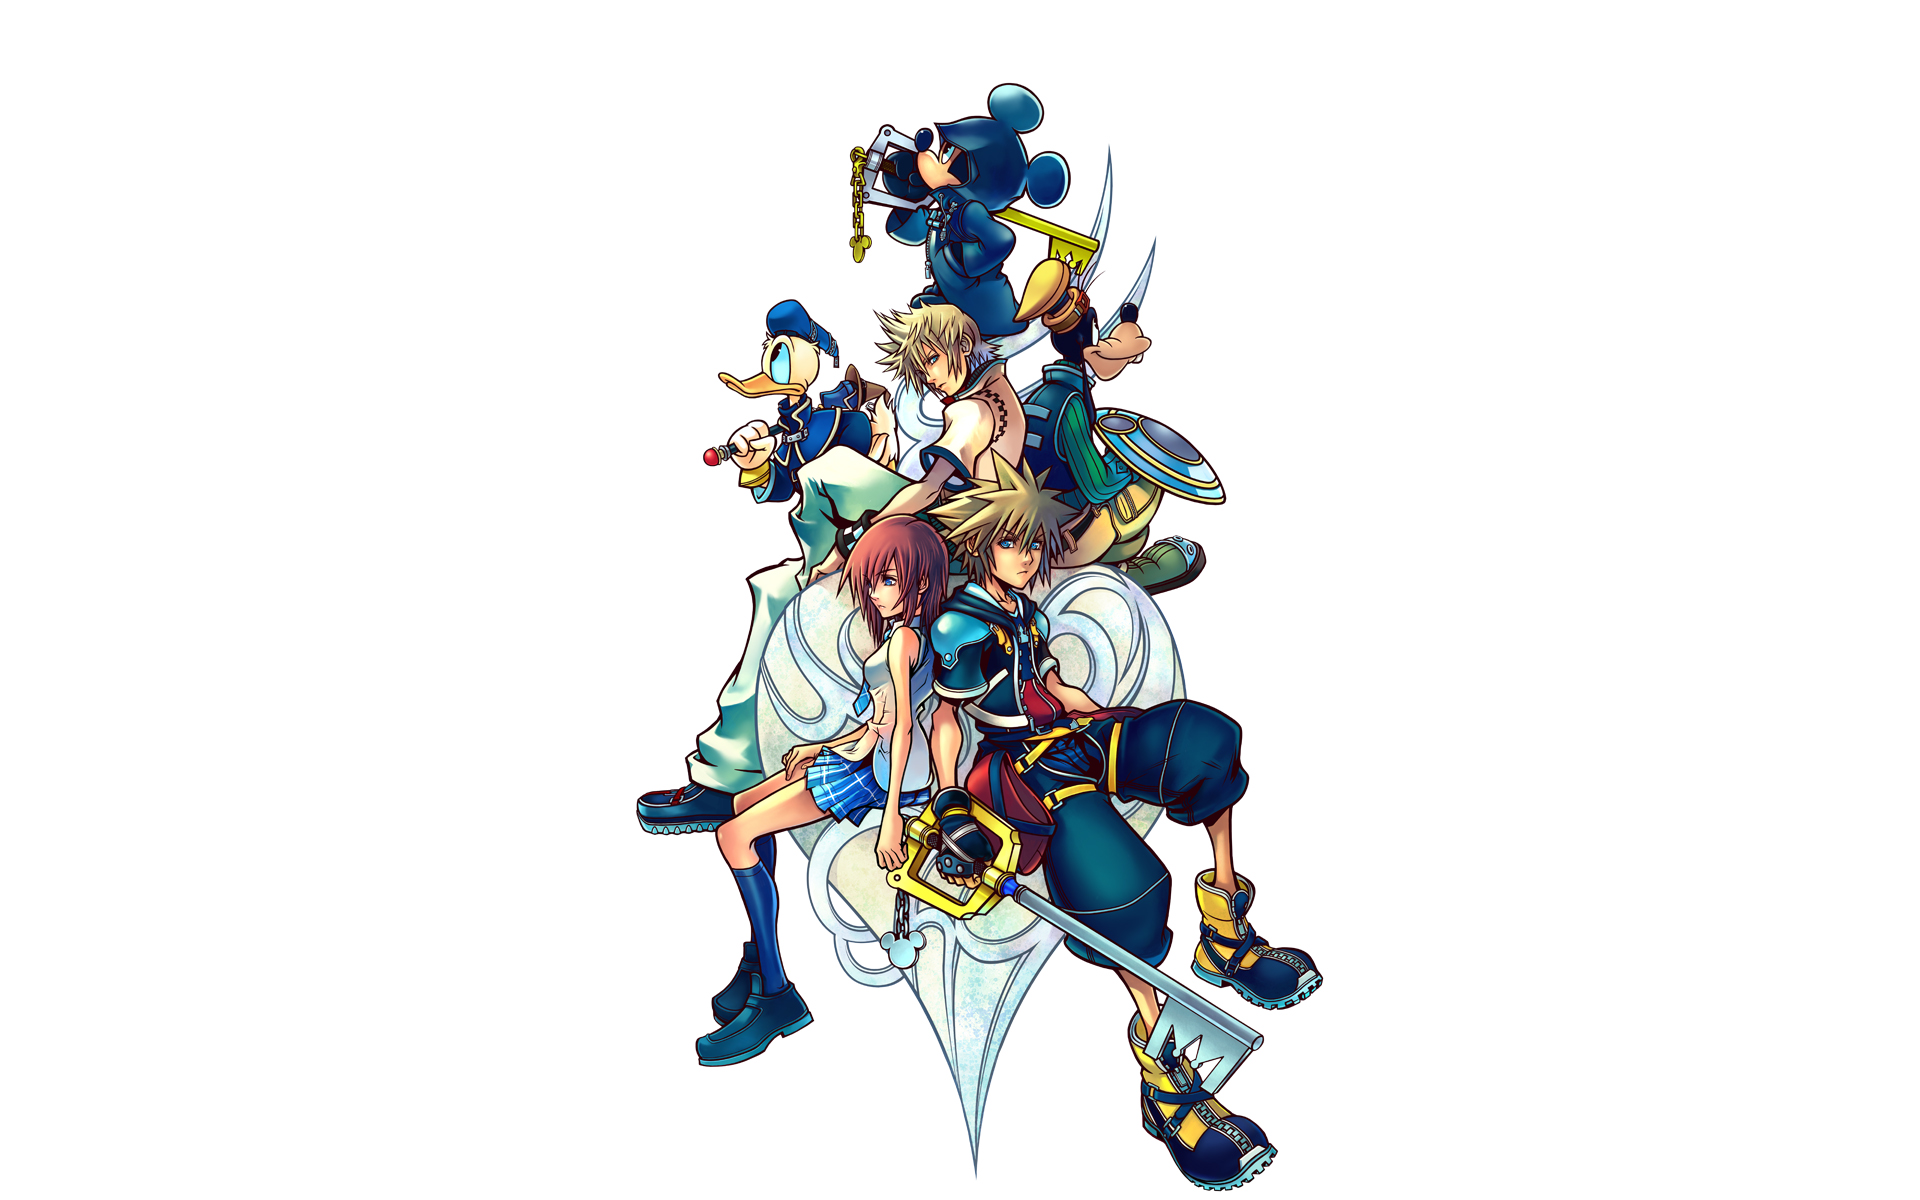 Kingdom Hearts Wallpaper HD 9015 1920x1200 px